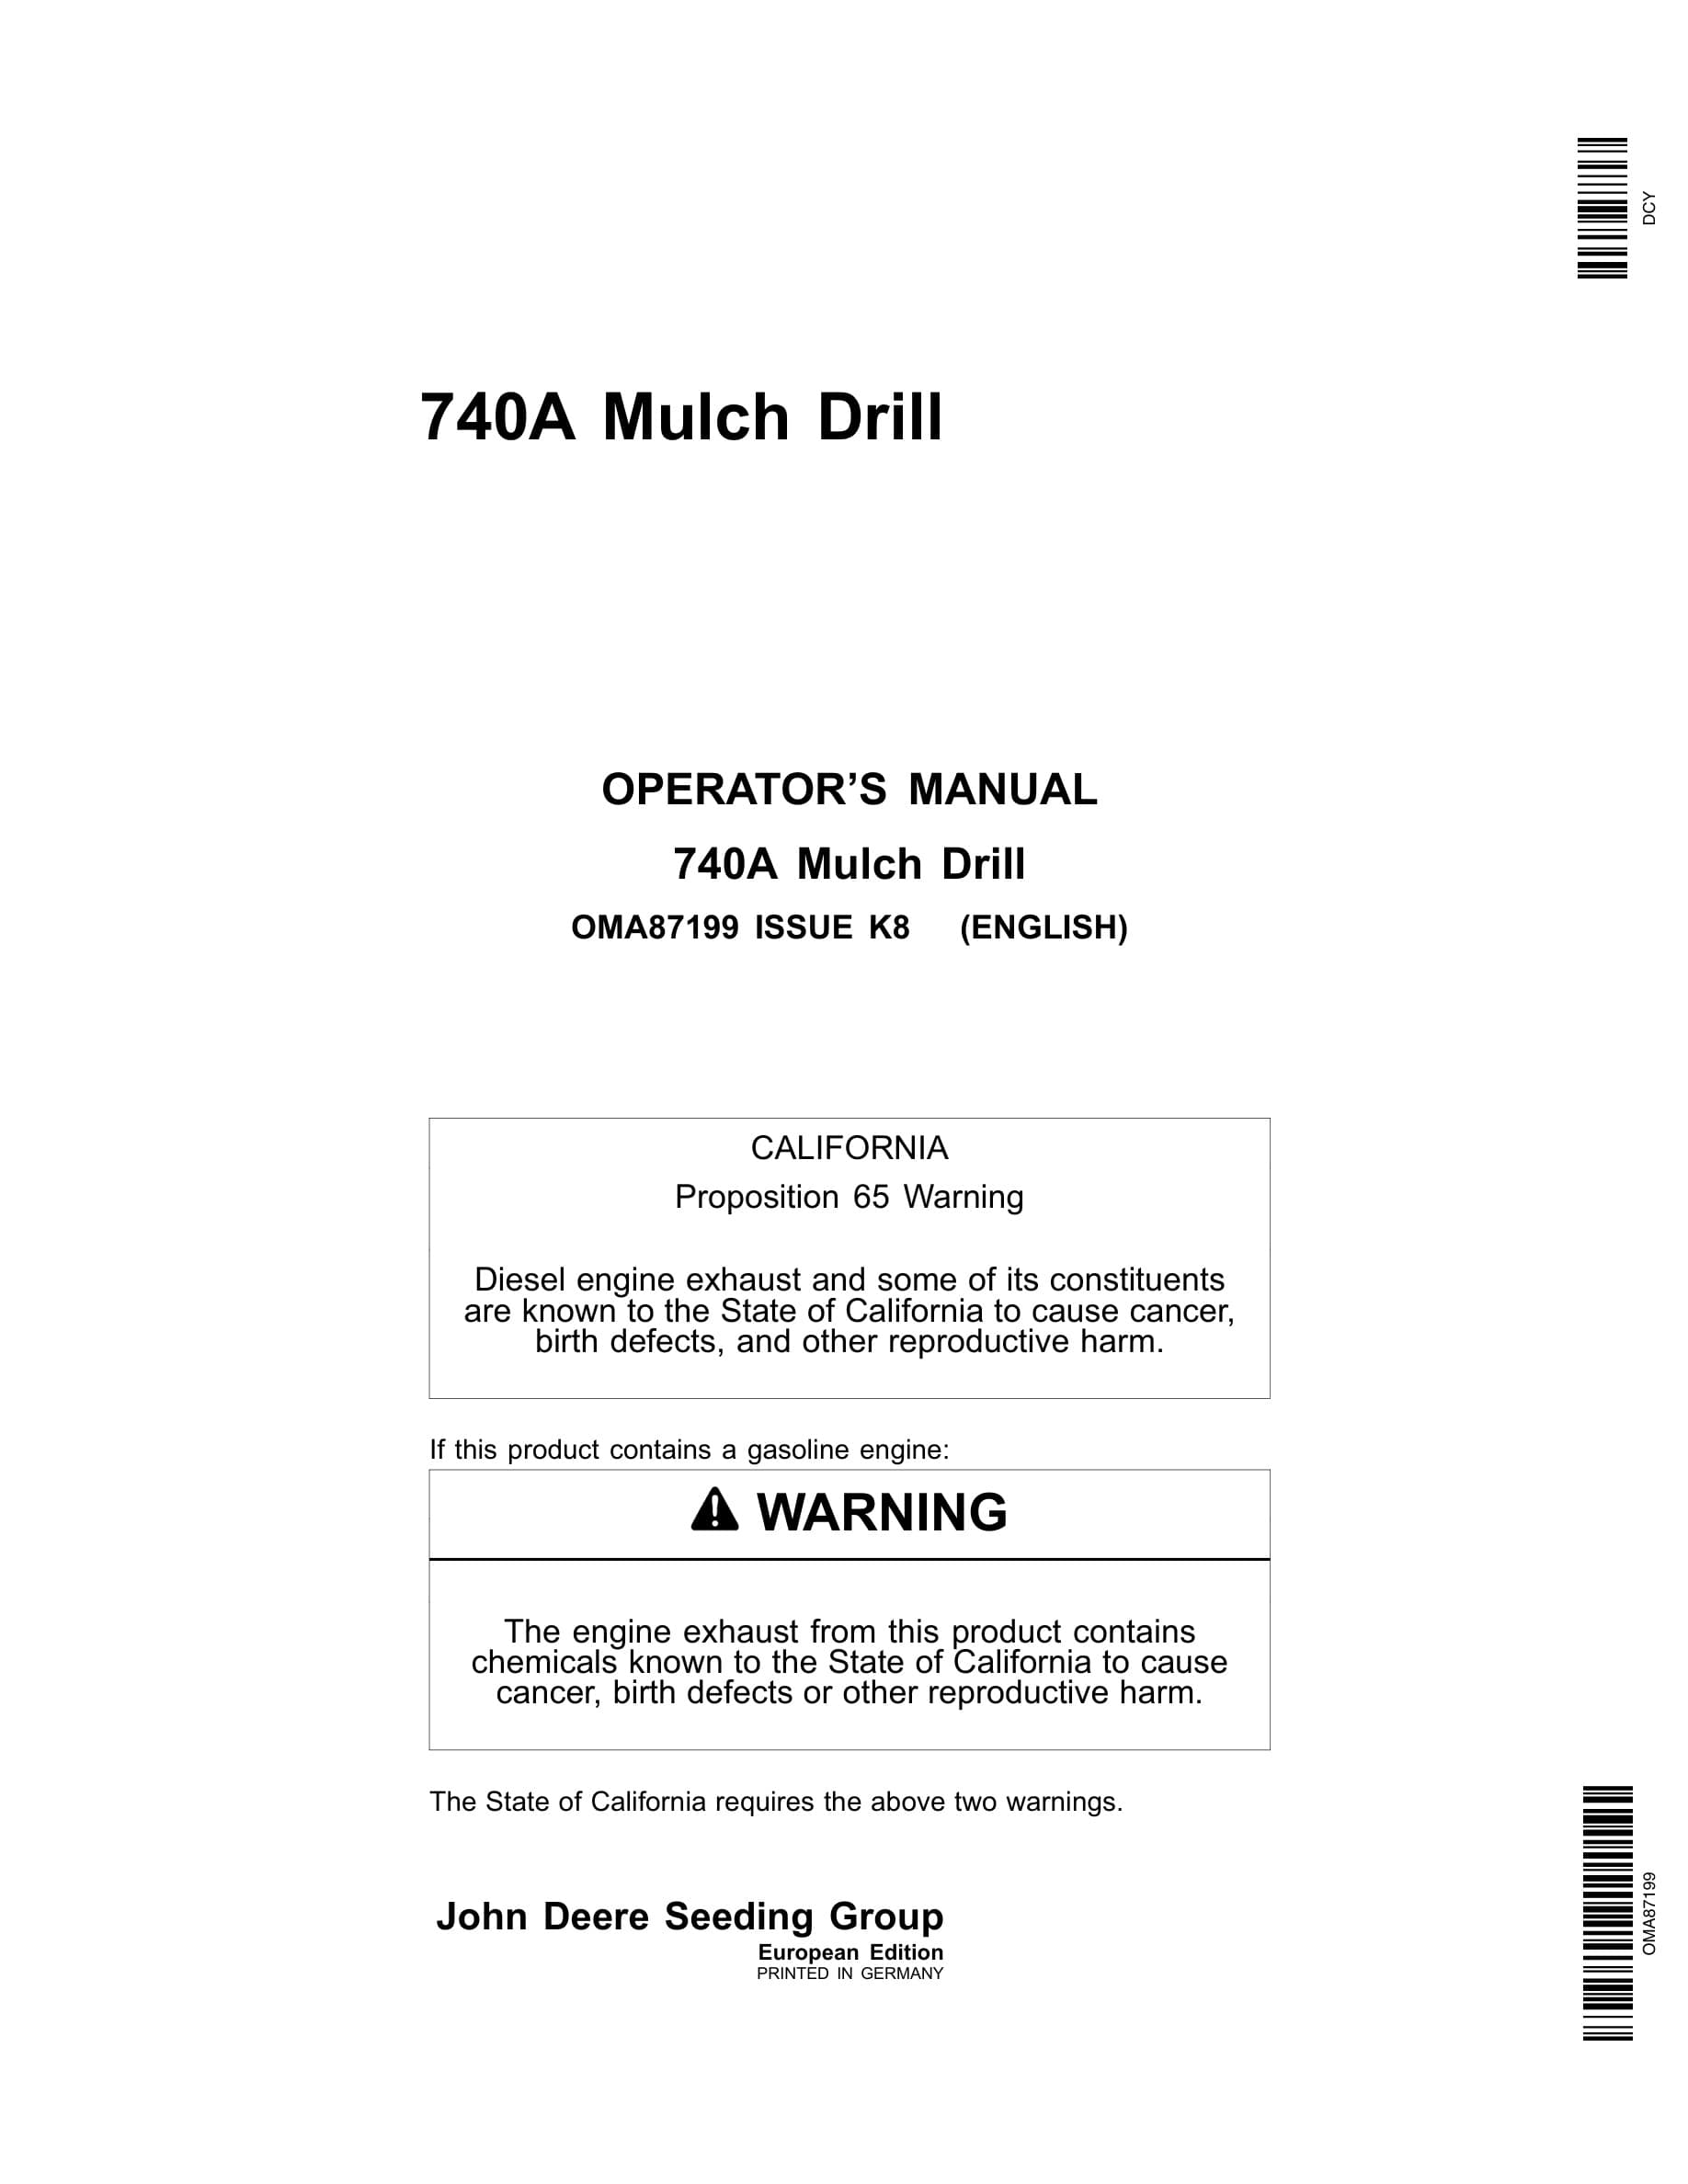 John Deere 740A Mulch Drill Operator Manual OMA87199-1